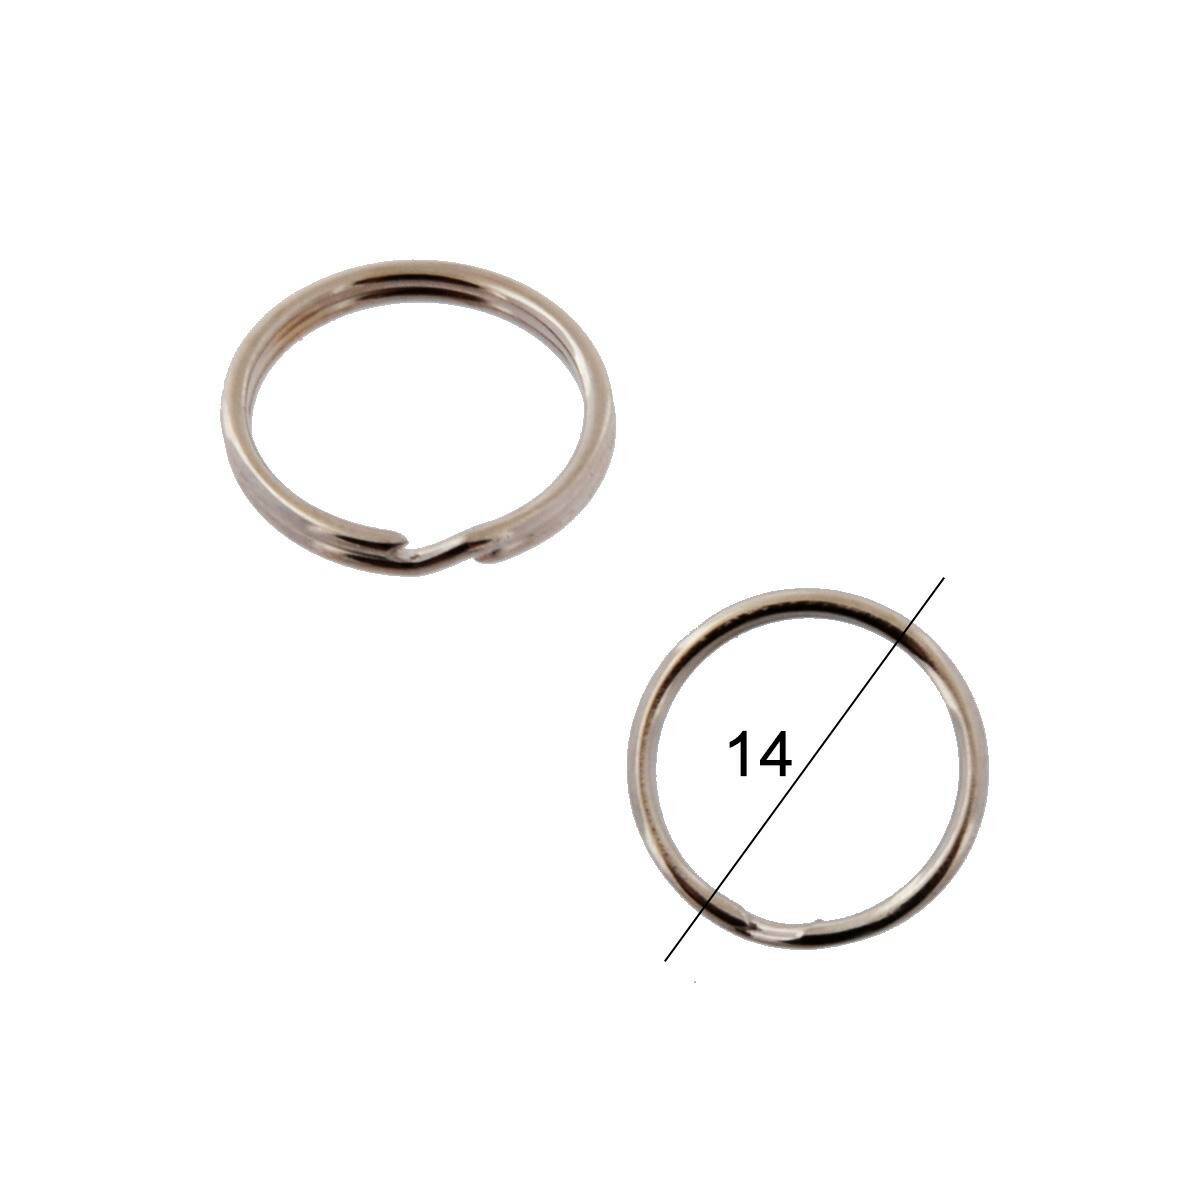 Key rings diameter 14mm